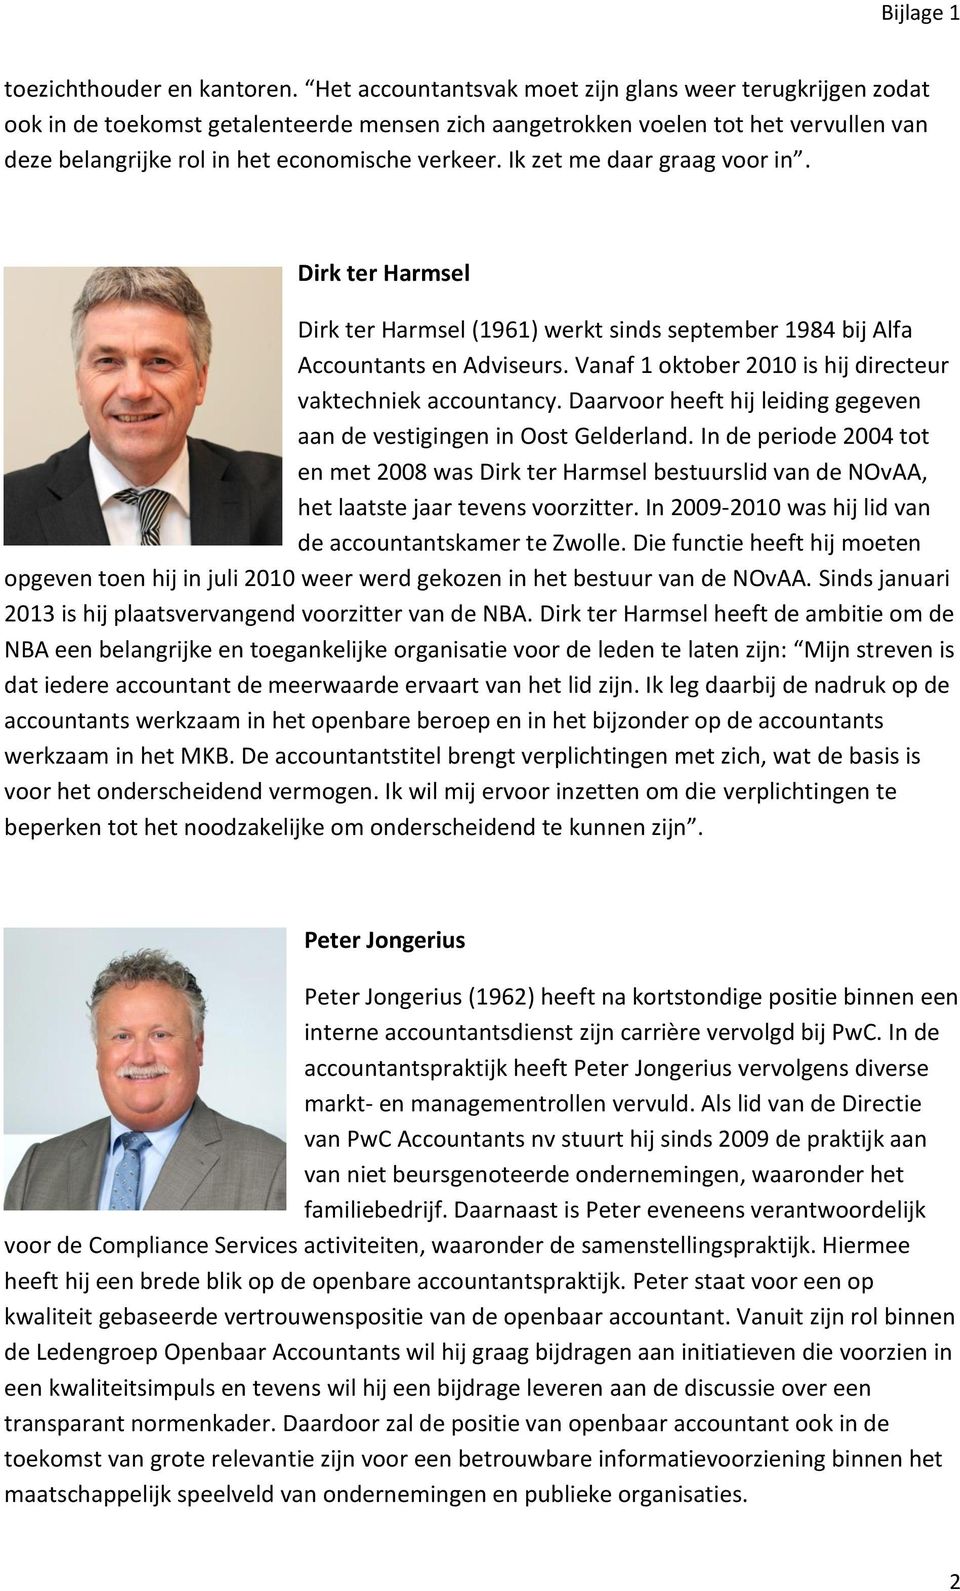 Ik zet me daar graag voor in. Dirk ter Harmsel Dirk ter Harmsel (1961) werkt sinds september 1984 bij Alfa Accountants en Adviseurs. Vanaf 1 oktober 2010 is hij directeur vaktechniek accountancy.